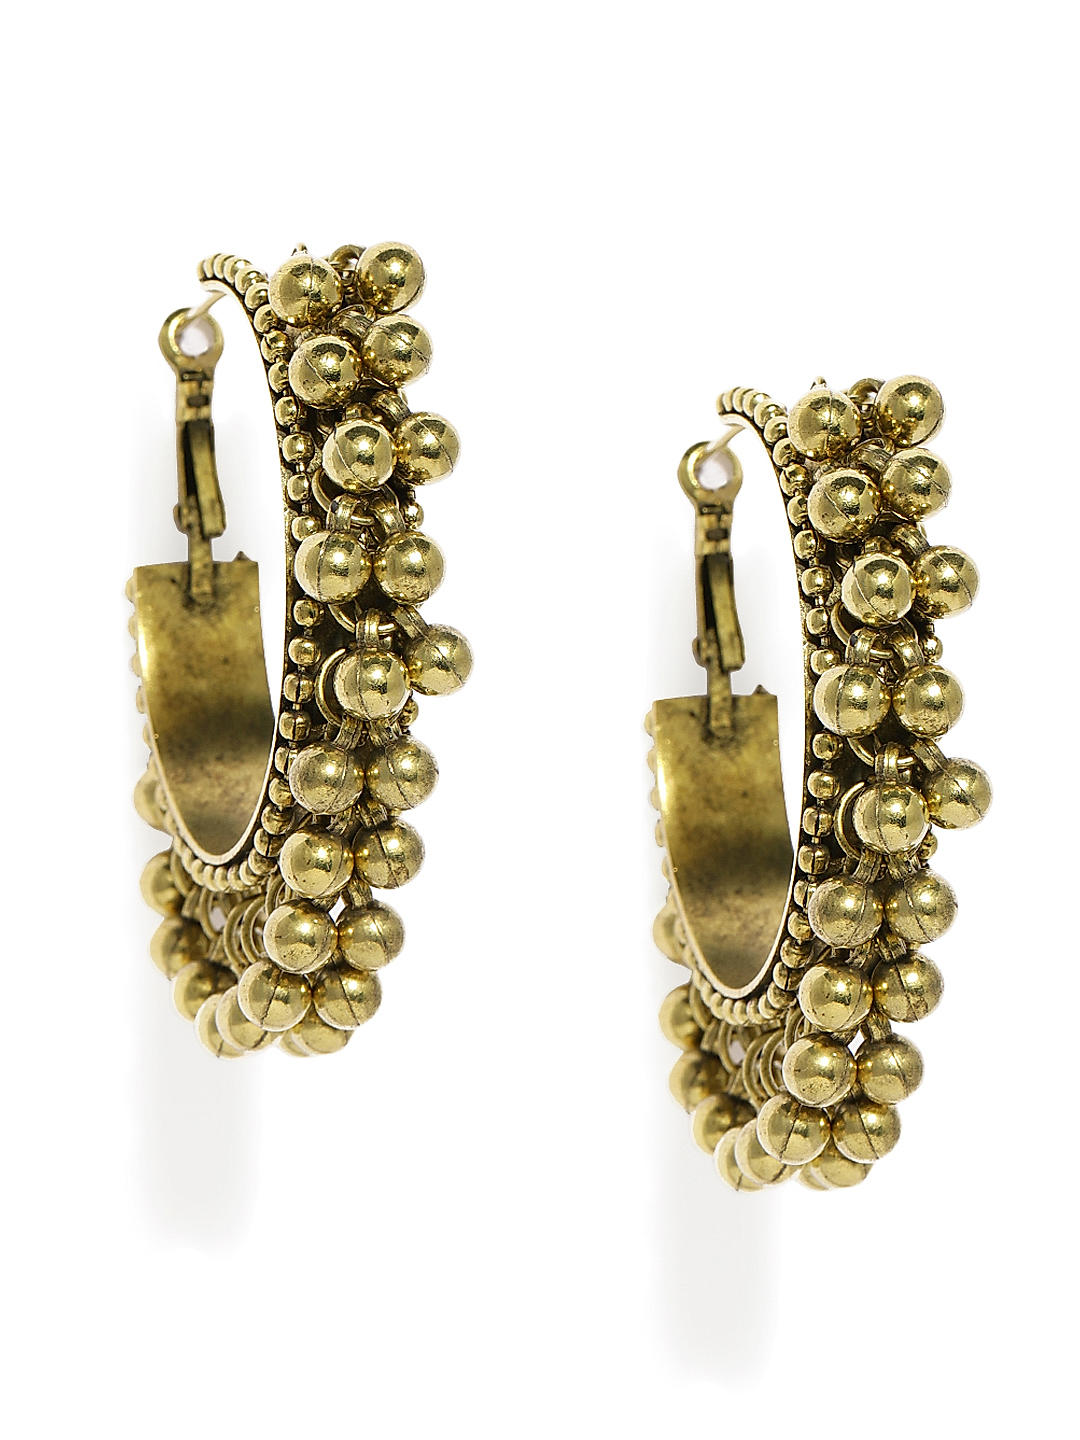 fcity.in - Ghungroo Balis / Earrings Under 50 Diva Graceful Earrings